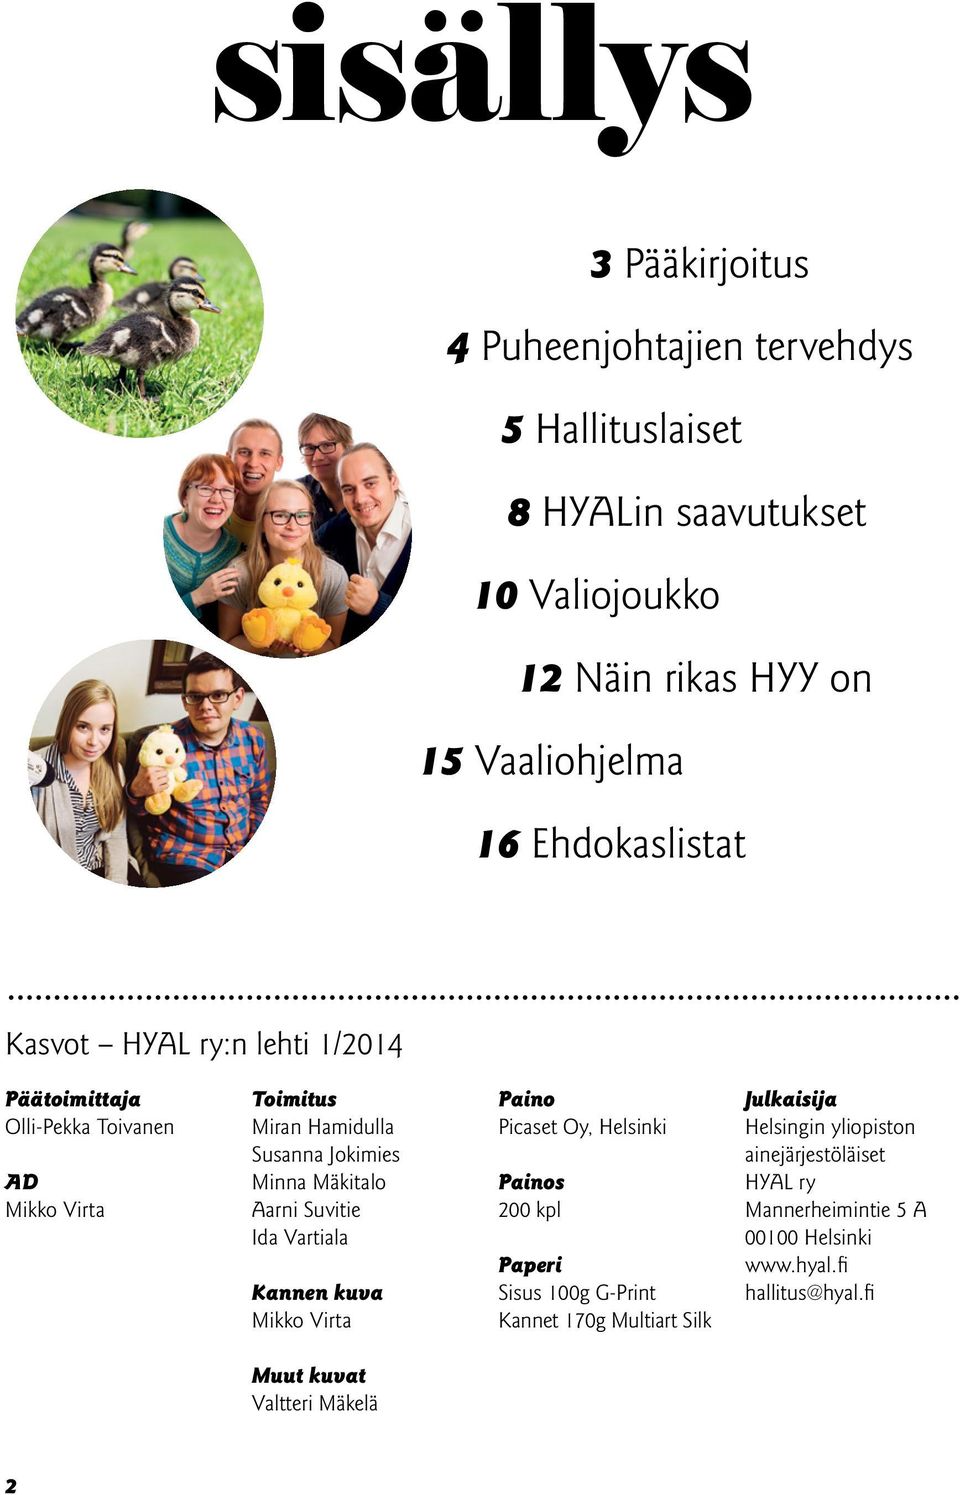 Mäkitalo Aarni Suvitie Ida Vartiala Kannen kuva Mikko Virta Paino Picaset Oy, Helsinki Painos 200 kpl Paperi Sisus 100g G-Print Kannet 170g